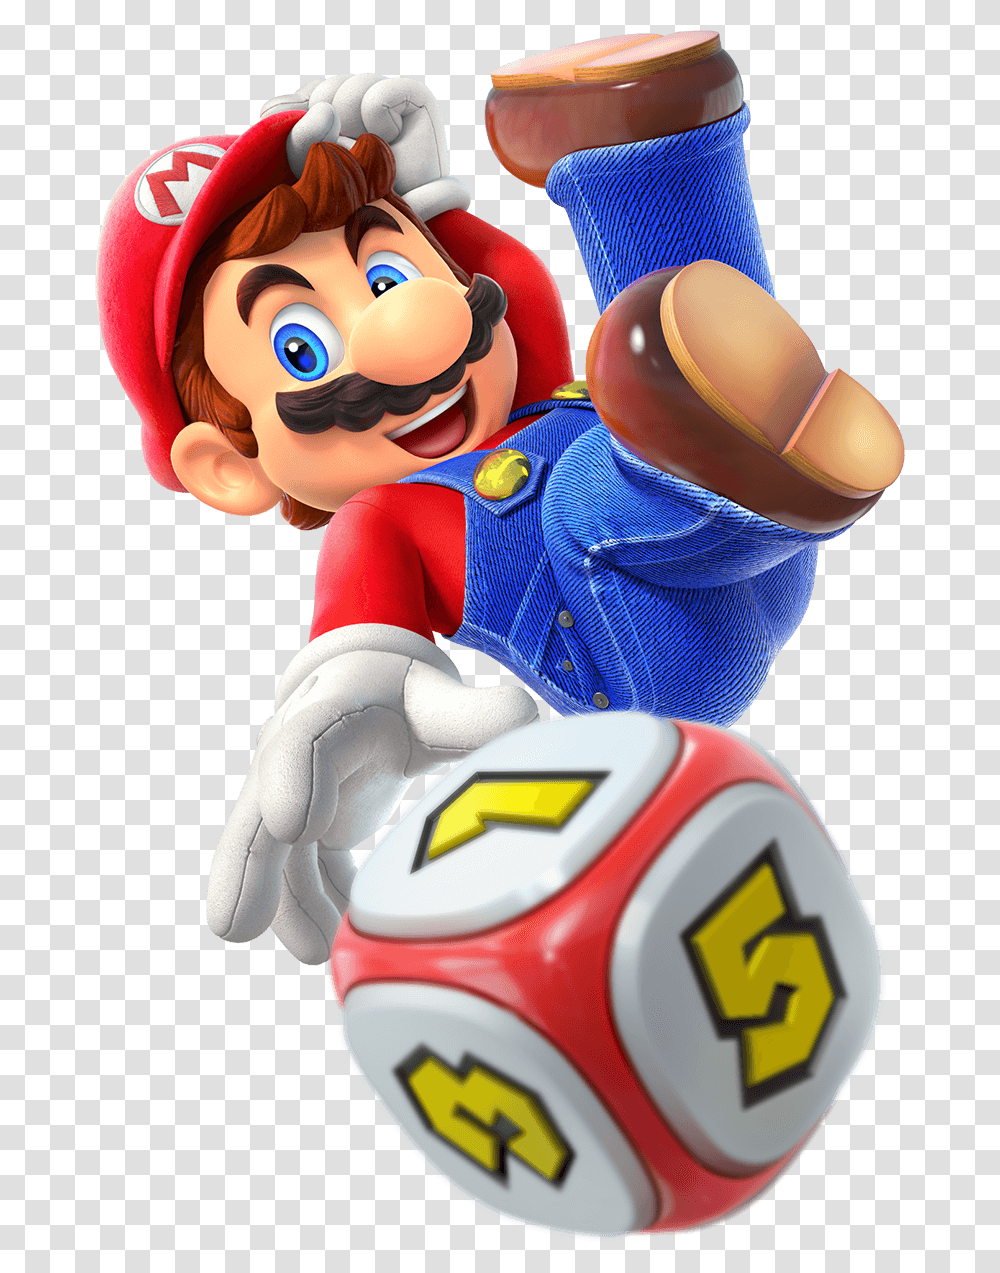 Mario Mario Super Mario Party, Person, Human Transparent Png